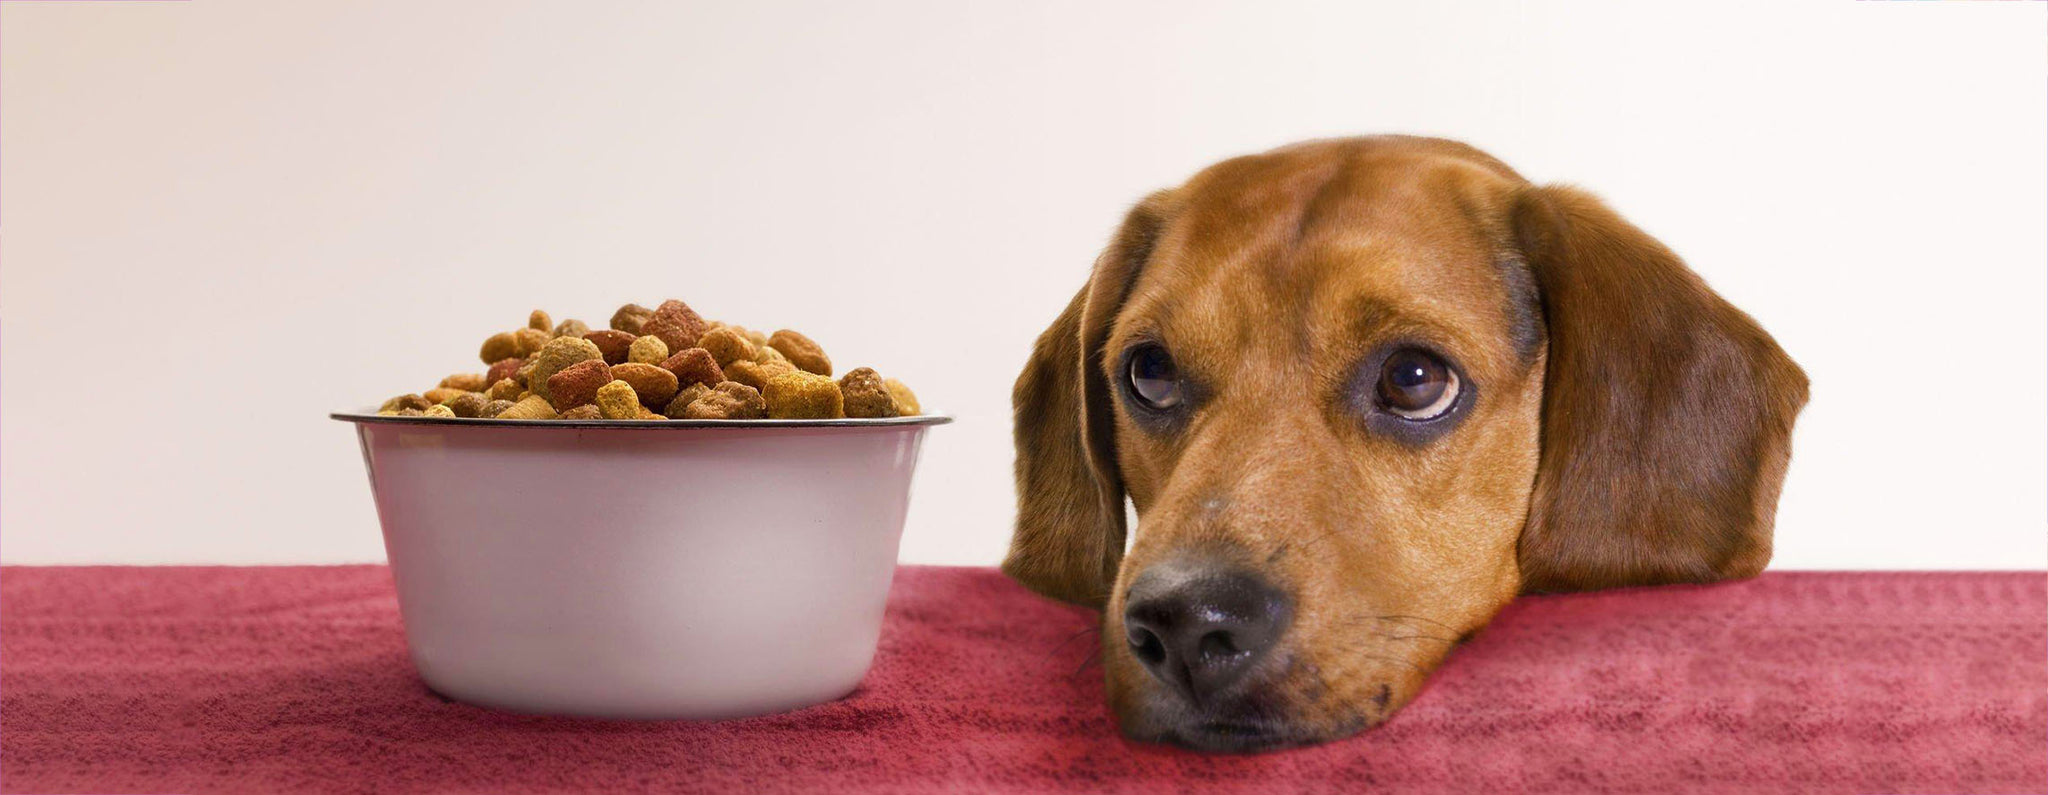 La importancia de medir correctamente la porción de comida de tu perro